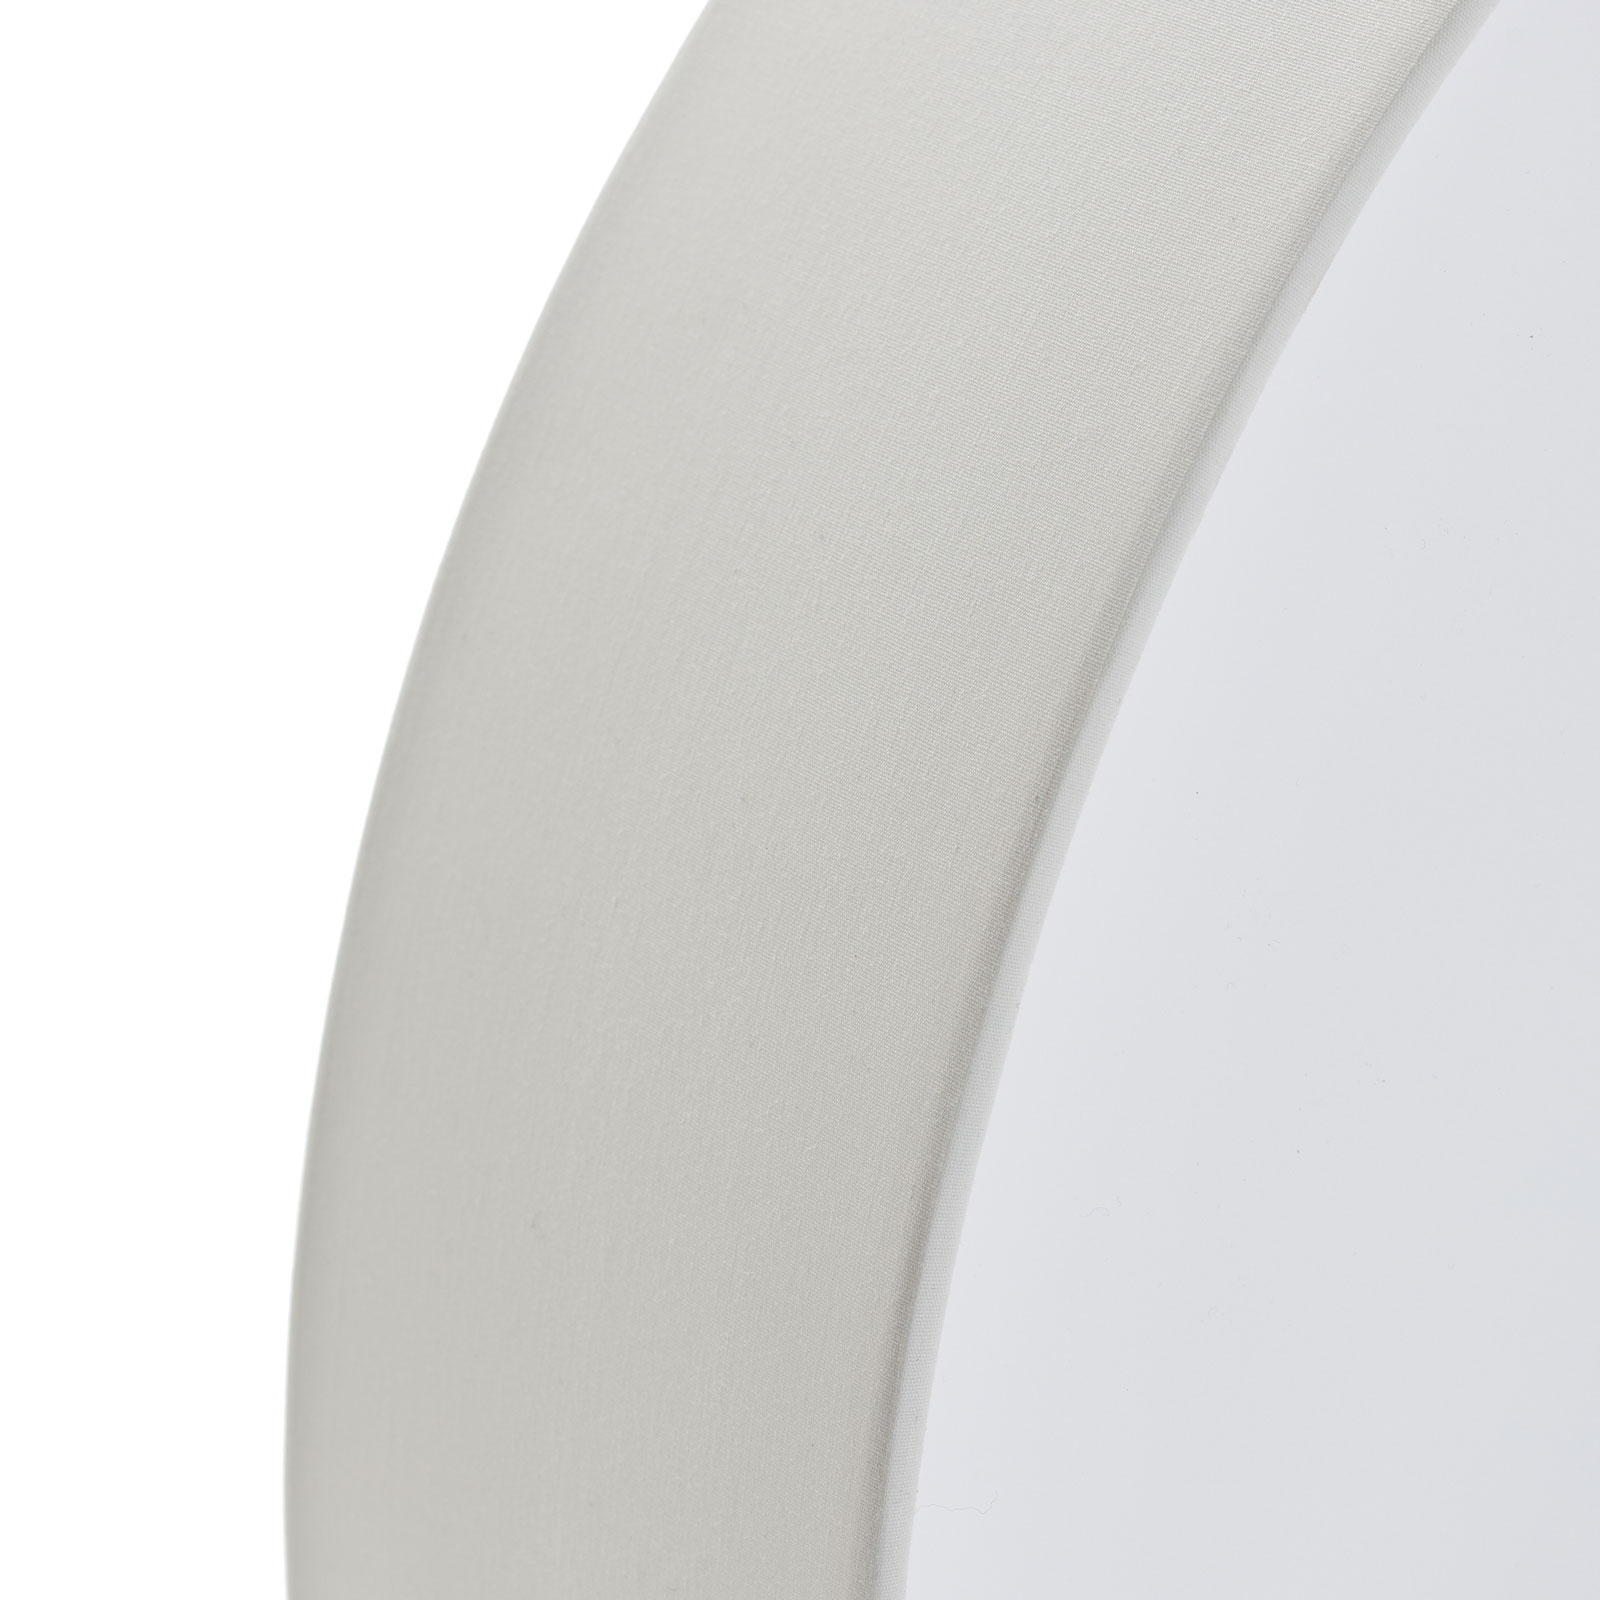 Lámpara de techo Pasteri, blanca, 57 cm